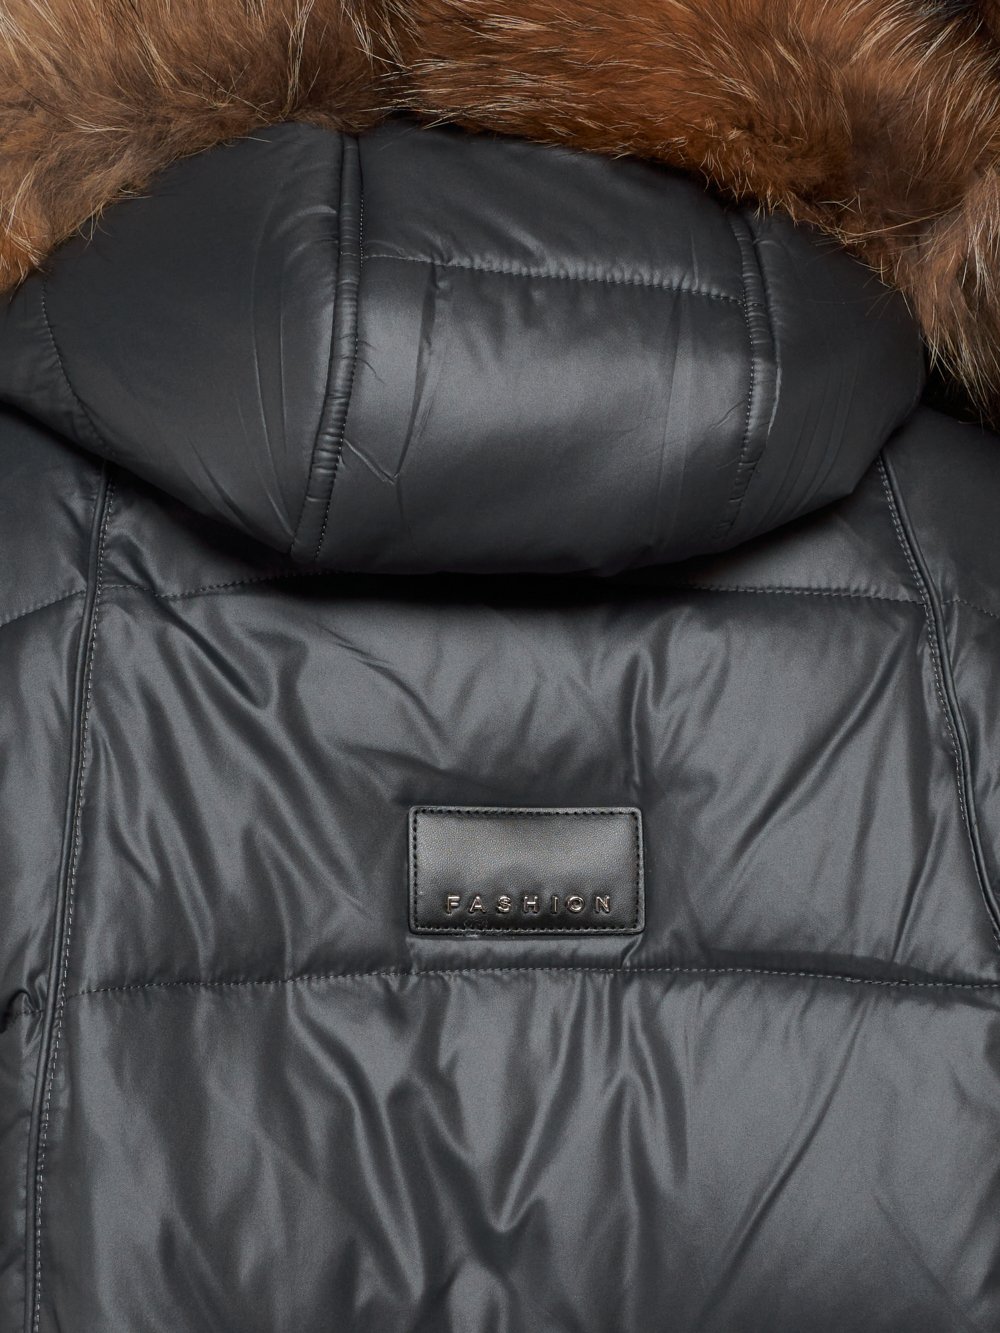 Купить куртку женскую зимнюю оптом от производителя недорого в Москве 132298TC 1